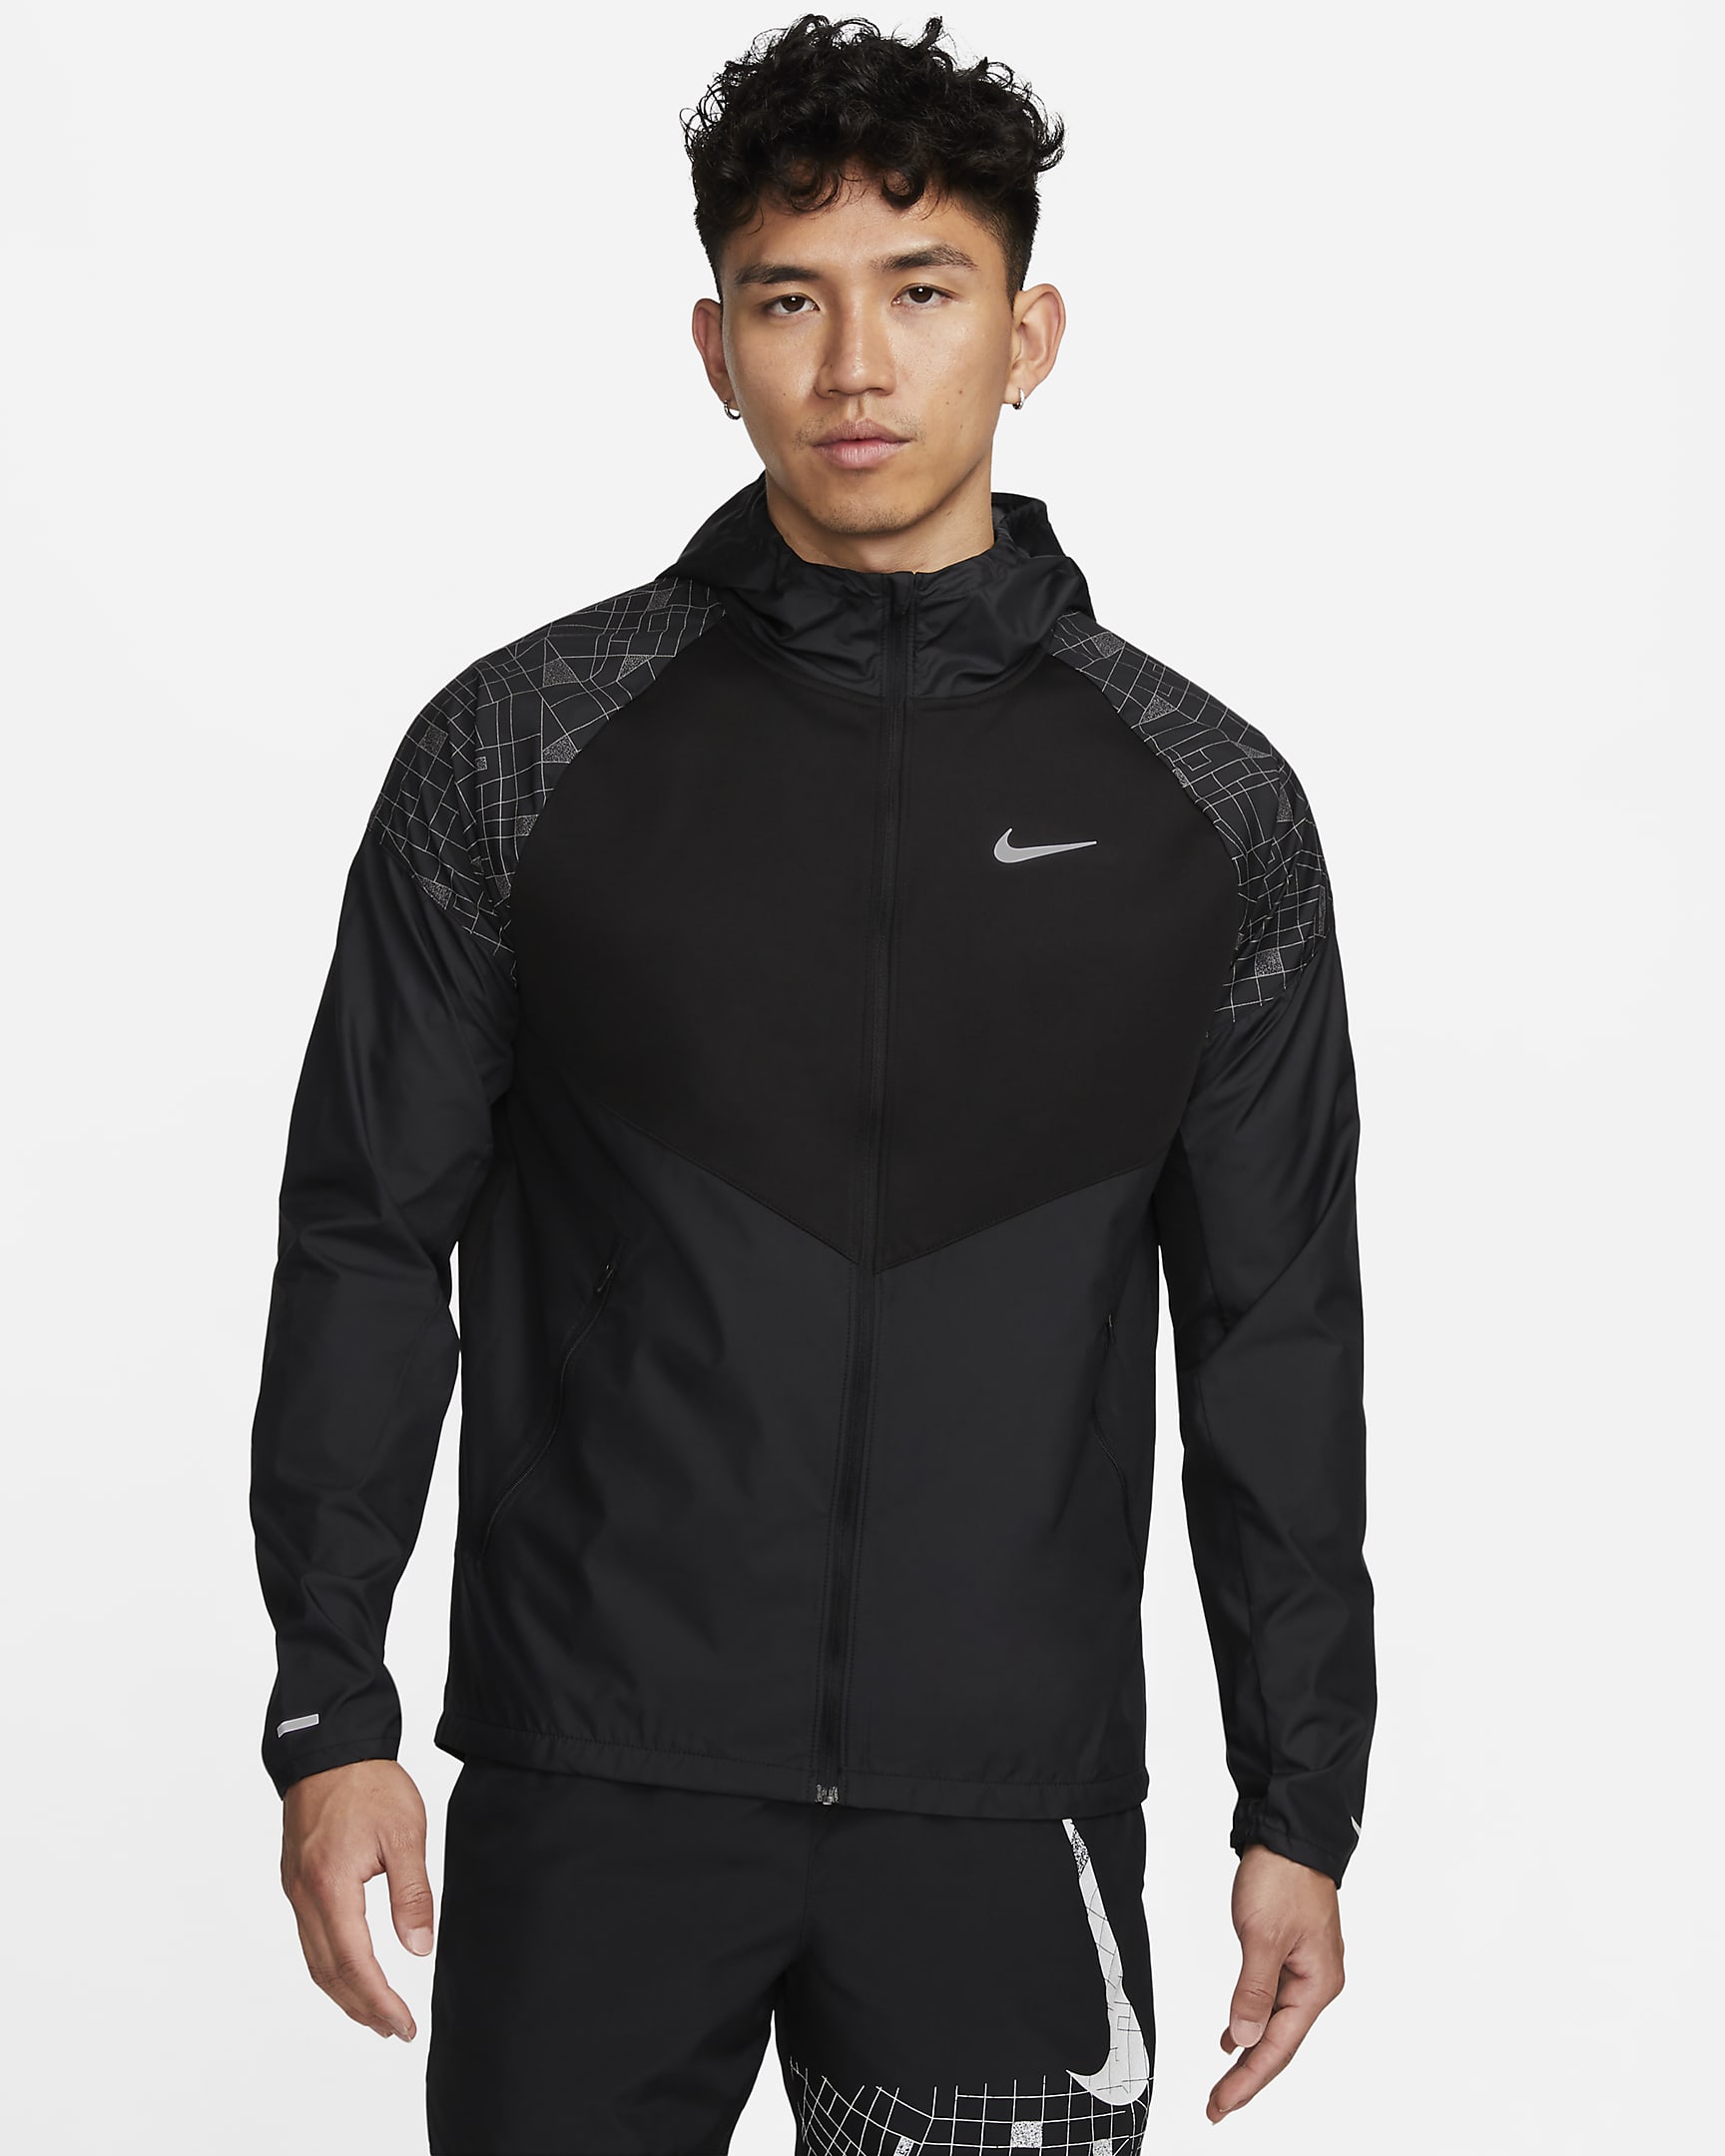 Nike Run Division Miler Men's Flash Running Jacket. Nike MY